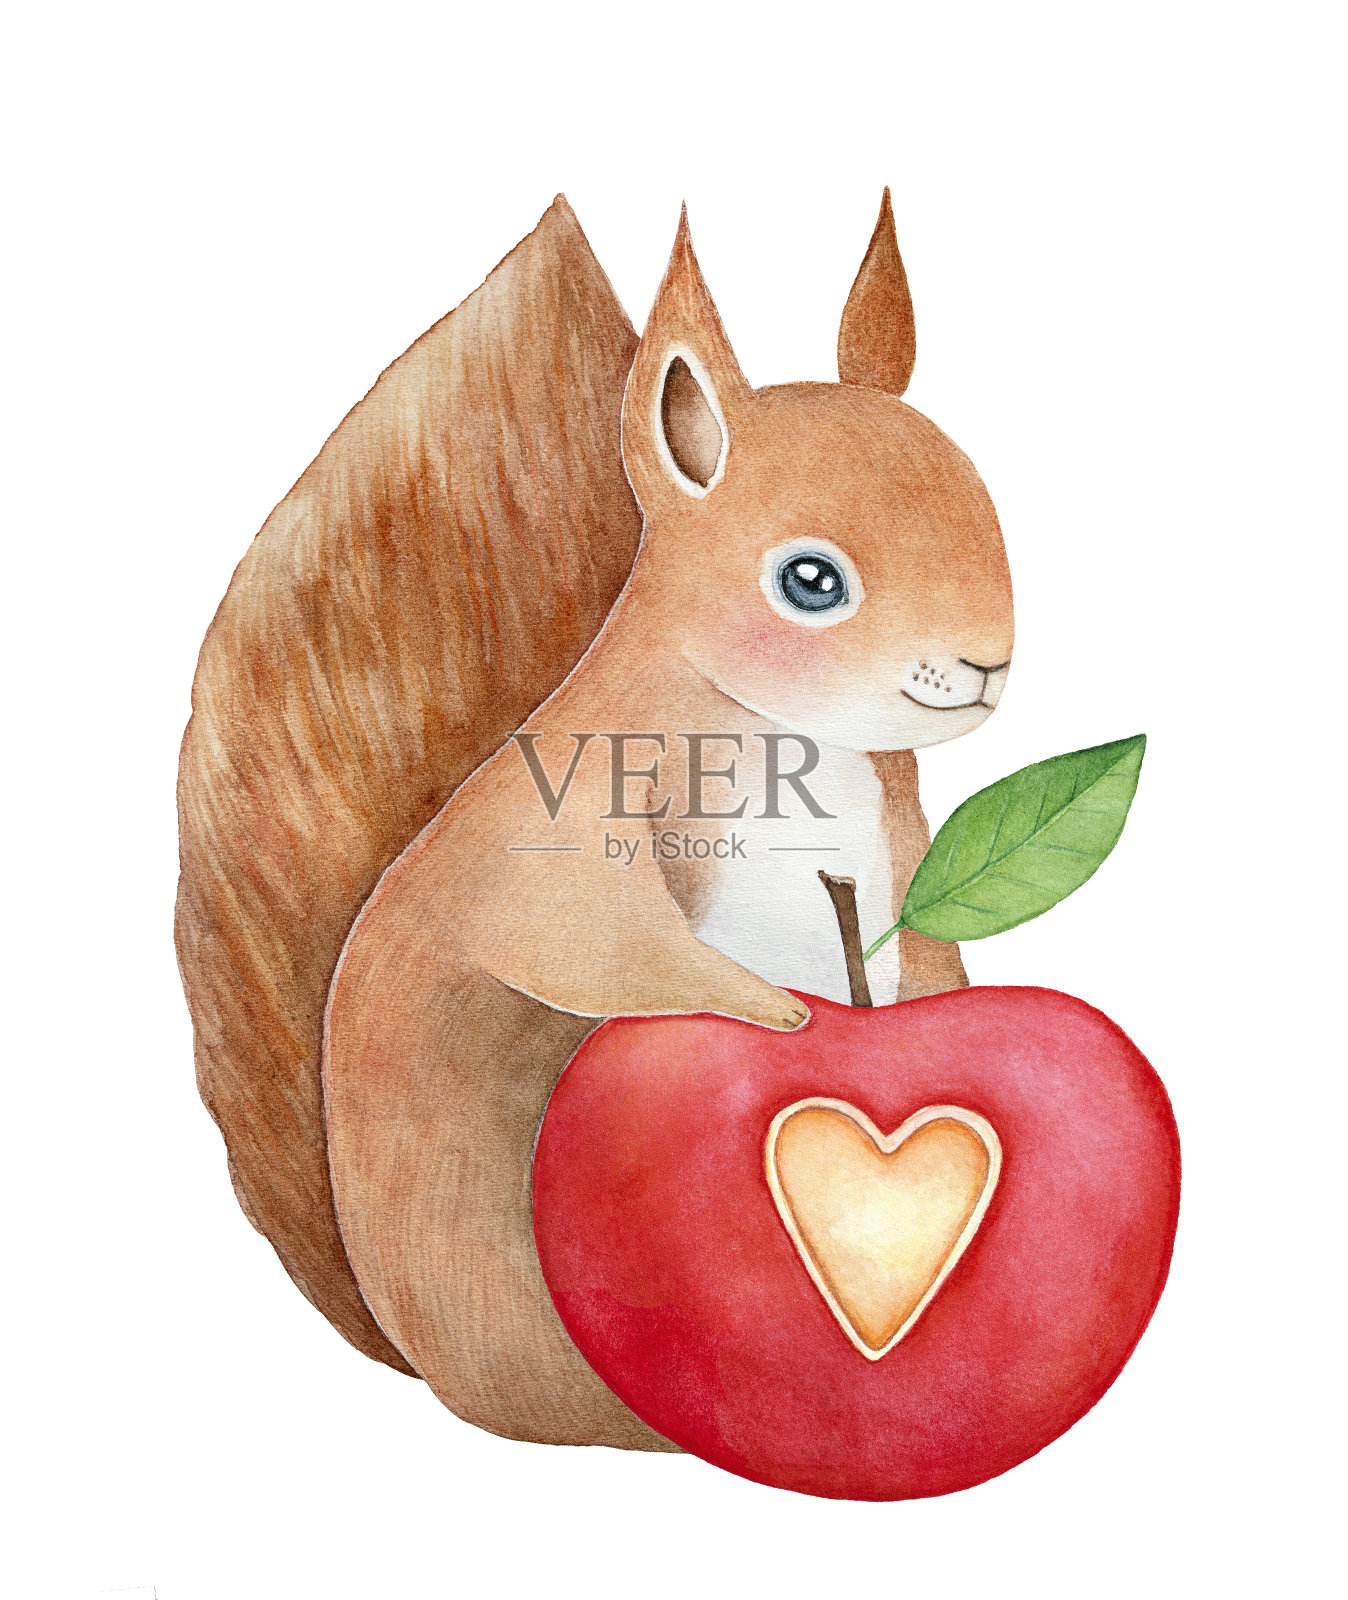 有趣的微笑松鼠的性格，毛茸茸的尾巴保持红色的风格苹果心形的切割和小绿叶。设计元素图片